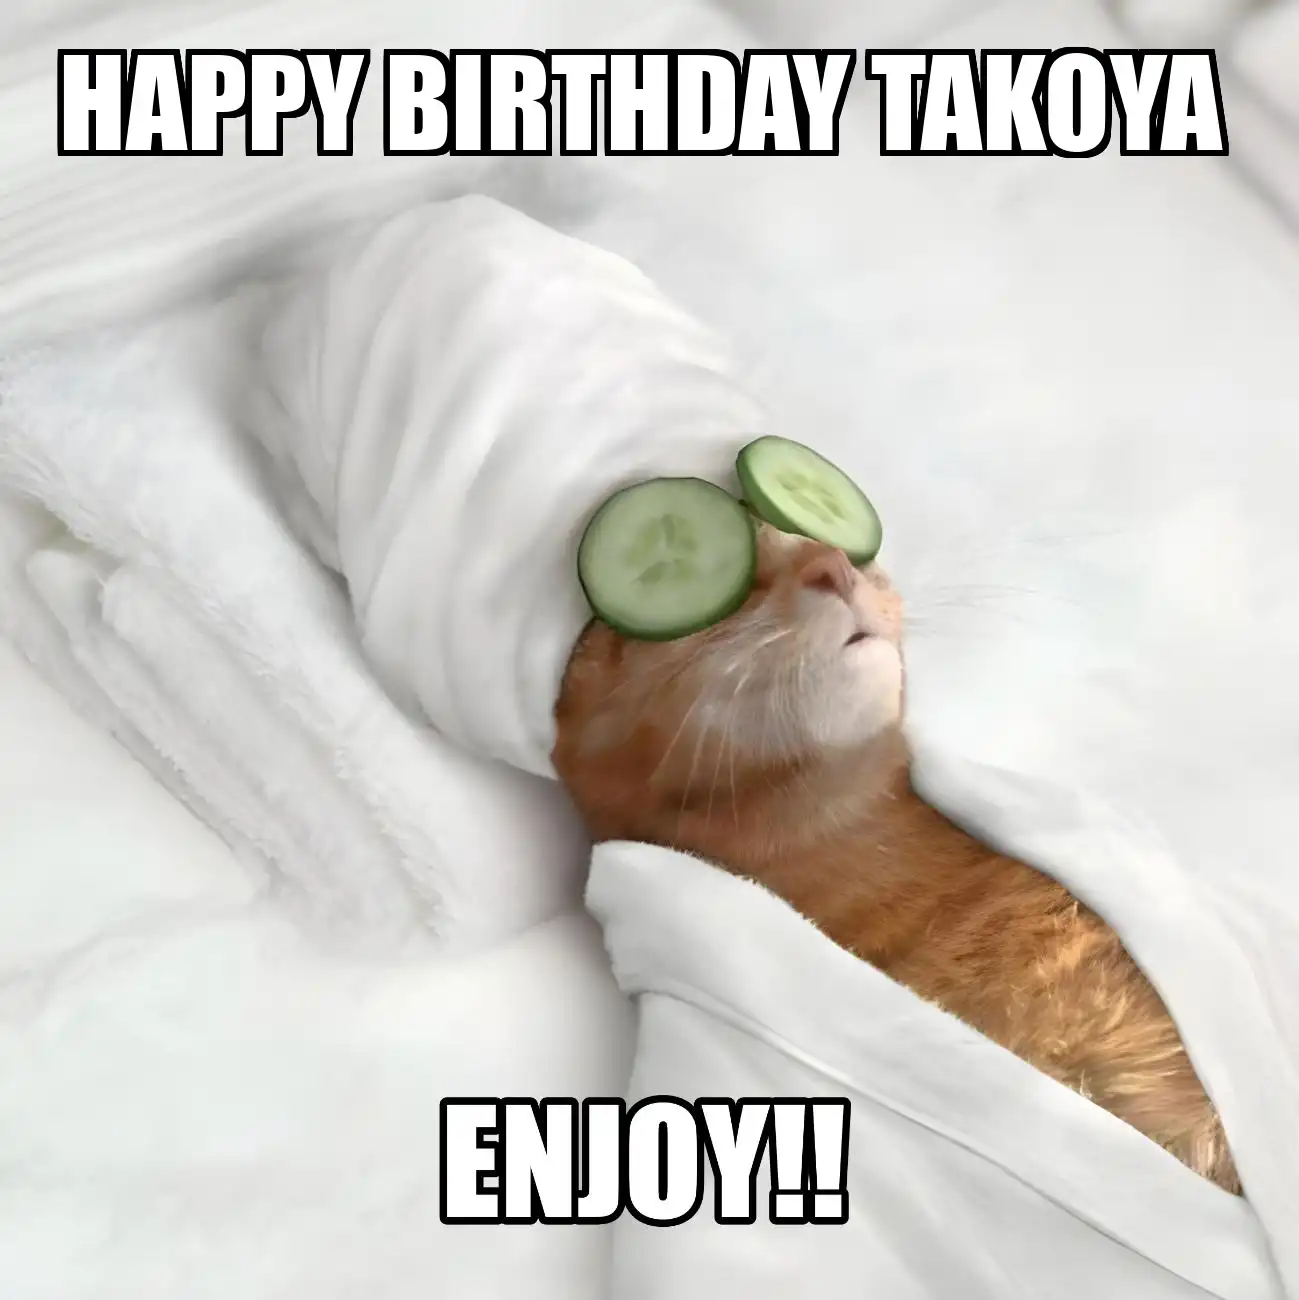 Happy Birthday Takoya Enjoy Cat Meme